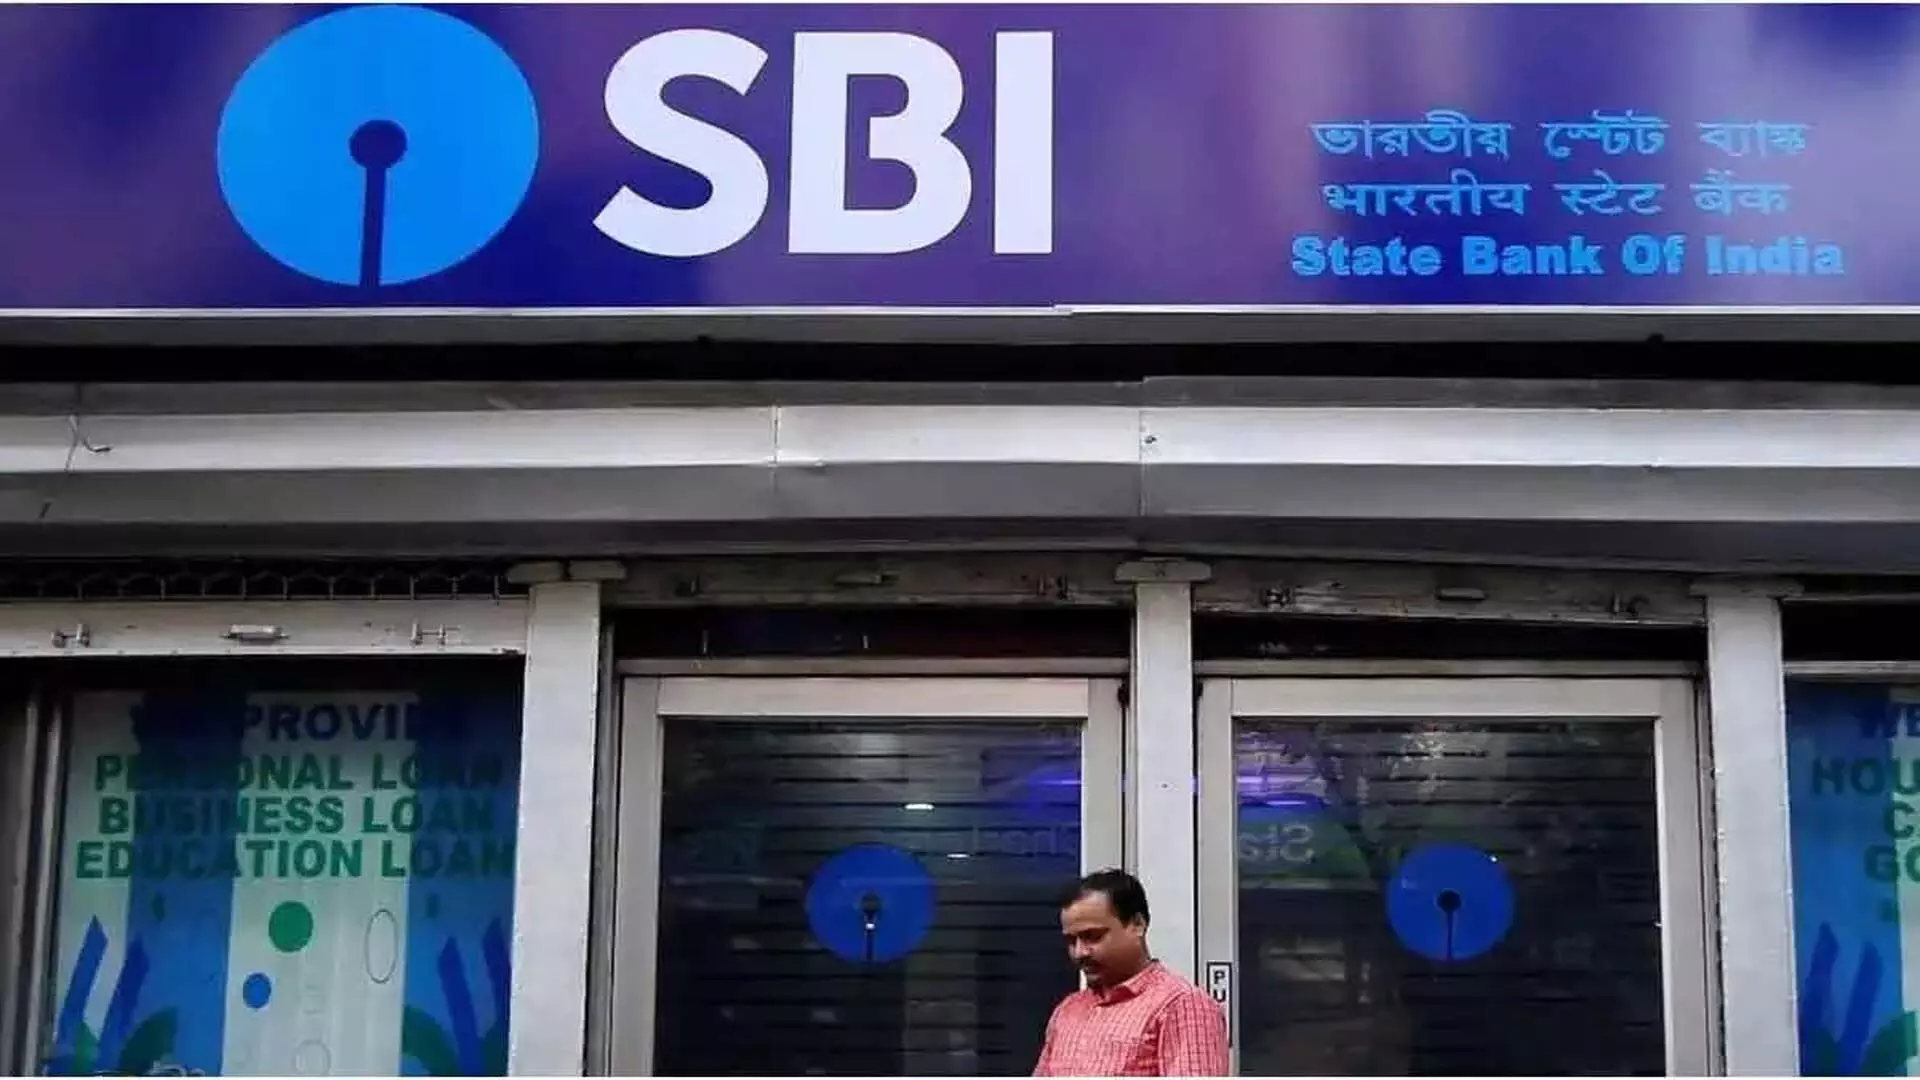 SBI ने 20,000 डिजिटल लघु व्यवसाय ऋण स्वीकृत किए